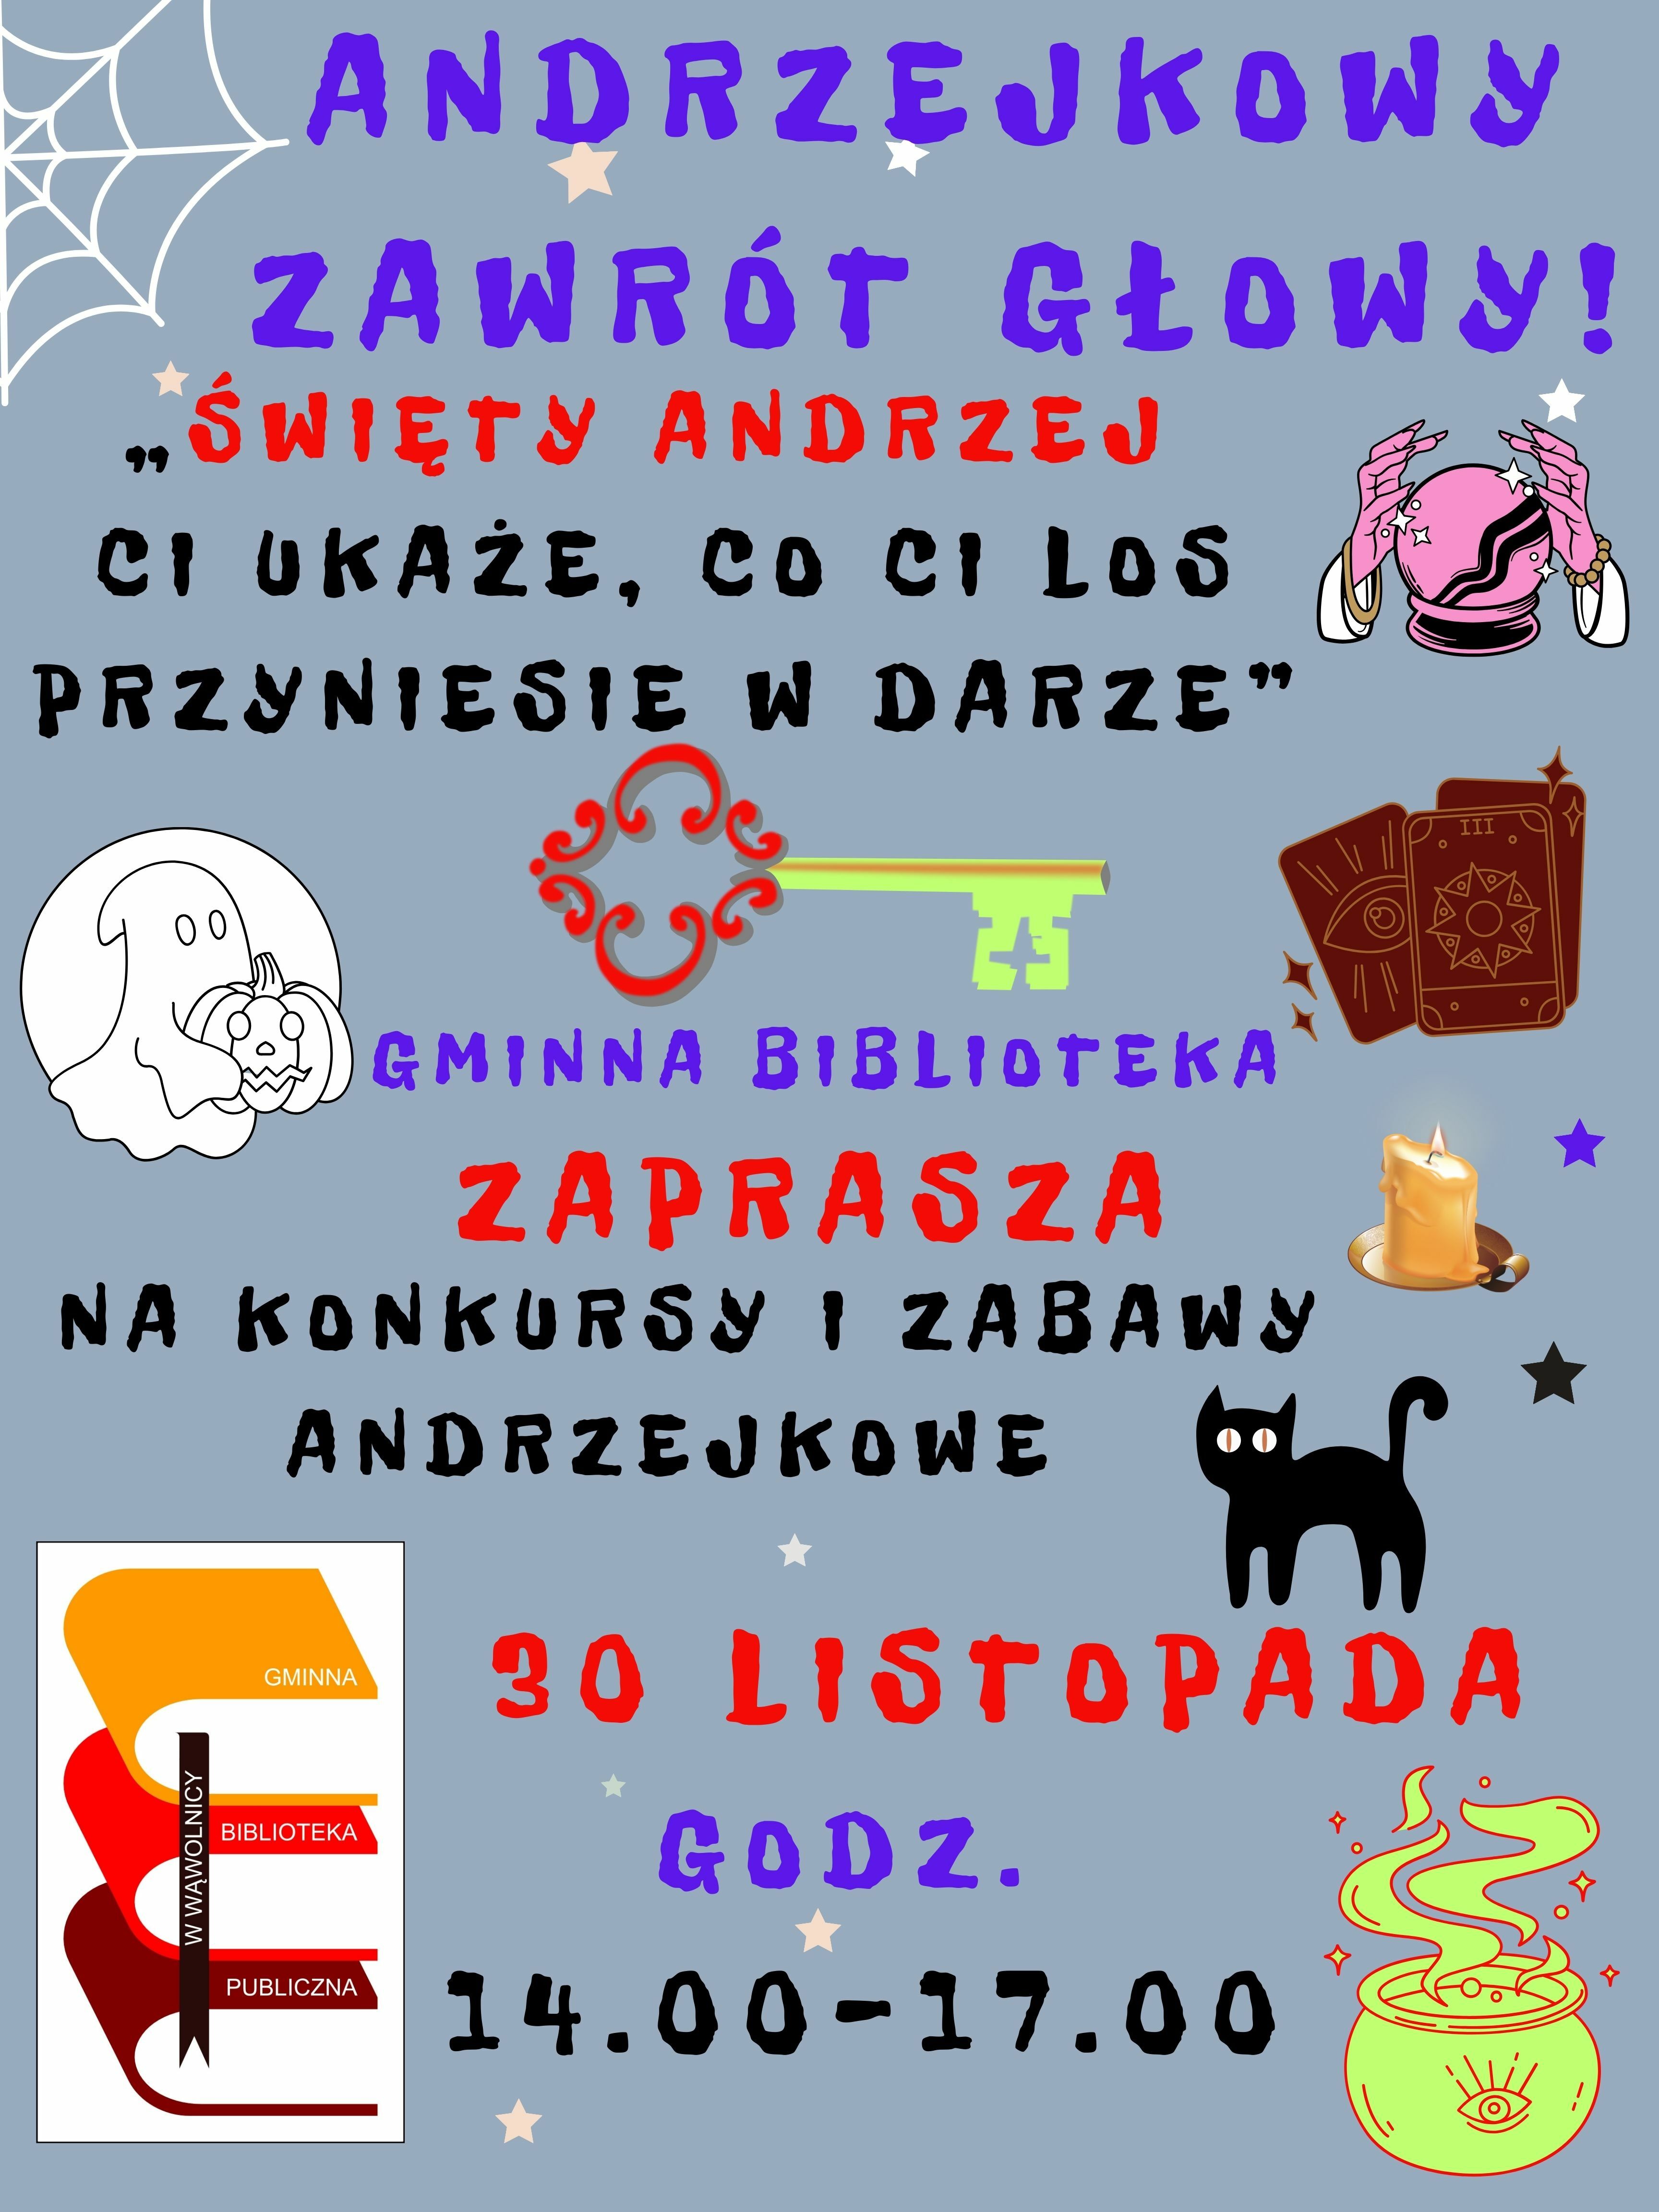 Plakat promujący andrzejkowe wydarzenie z elementami graficznymi: czarodziejskie księgi, czarna kotka, kryształowa kula, magiczne mikstury i symbole związane z wróżbami.